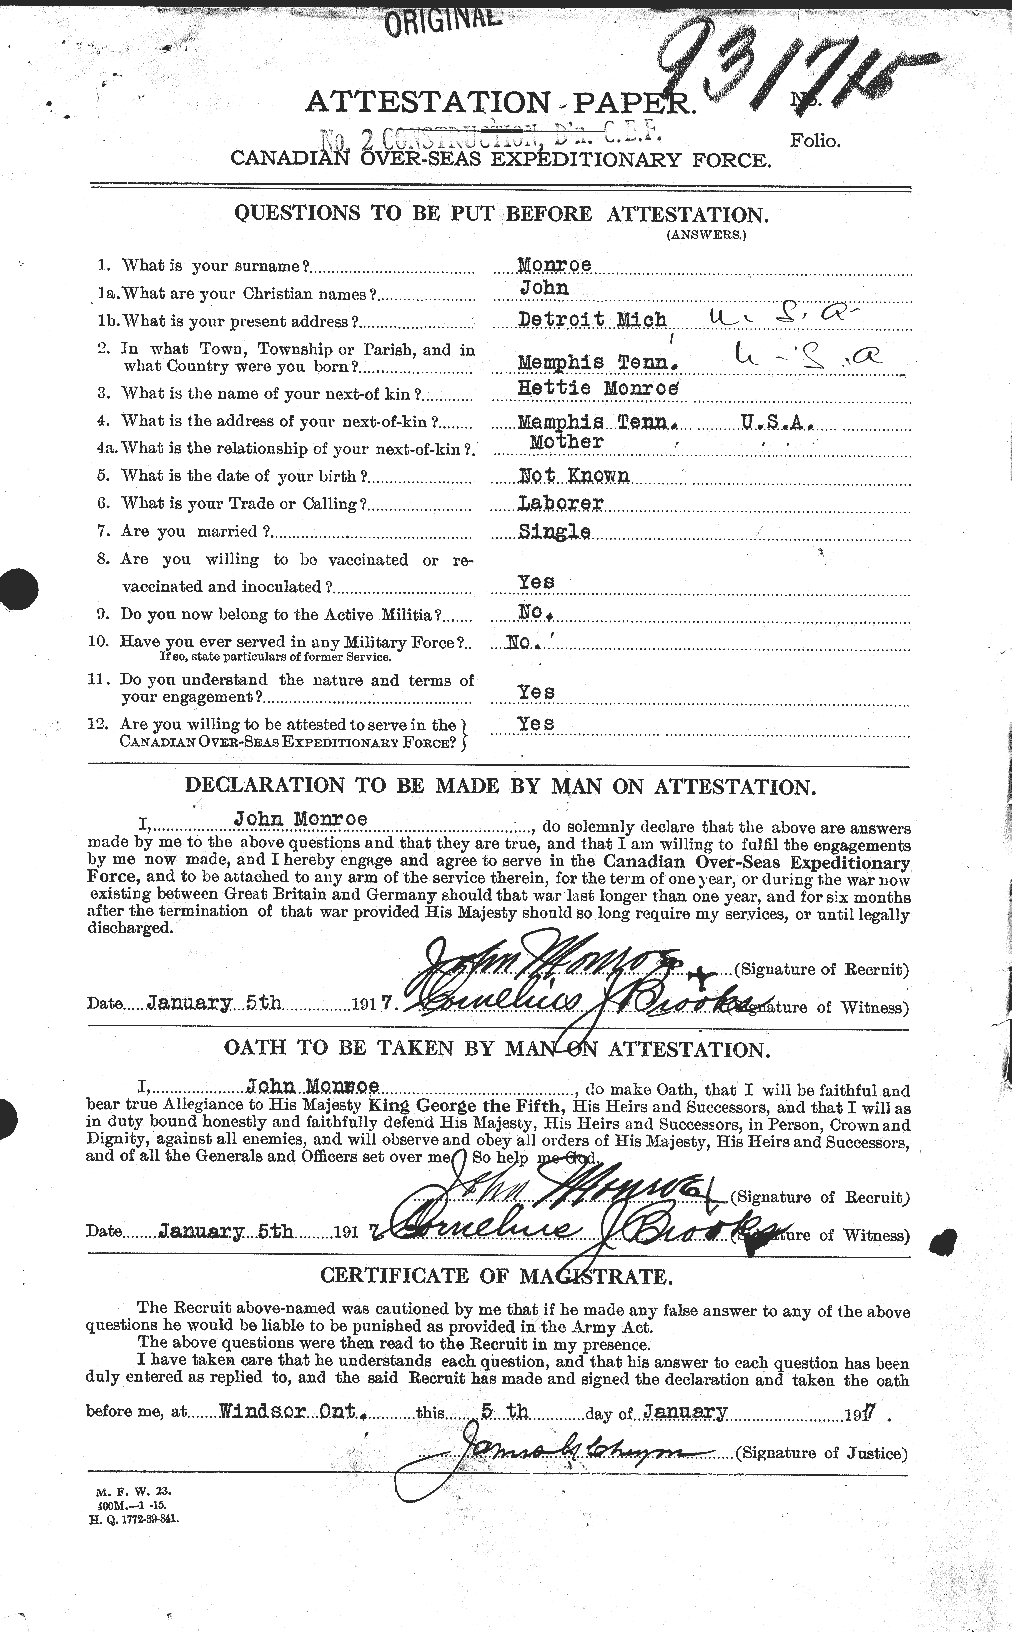 Dossiers du Personnel de la Première Guerre mondiale - CEC 500128a